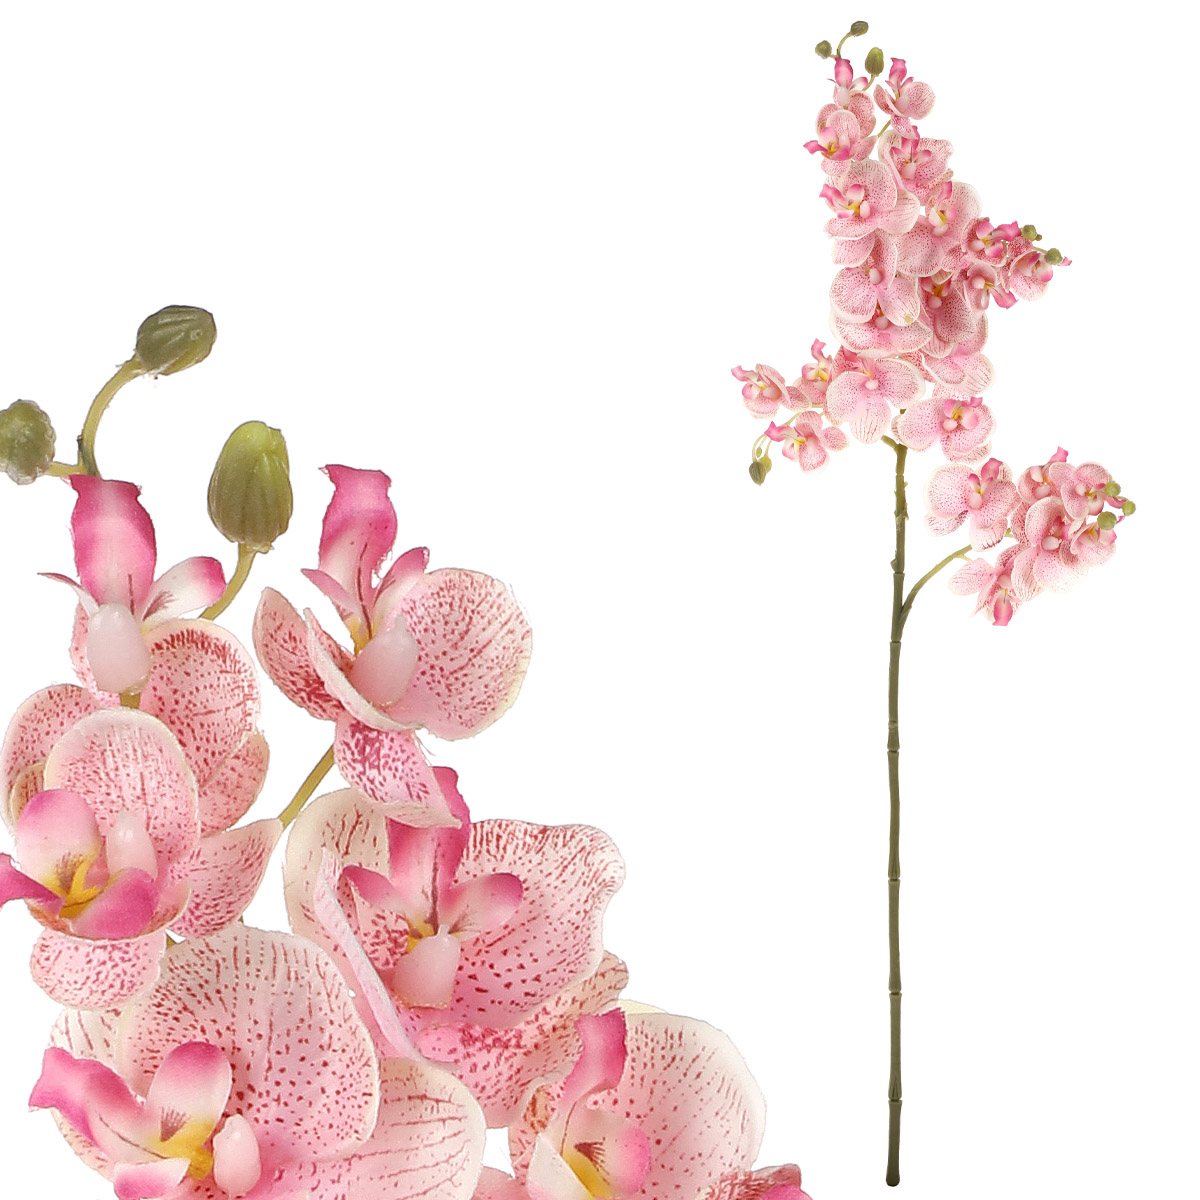 Orchidej, barva růžová, květina umělá